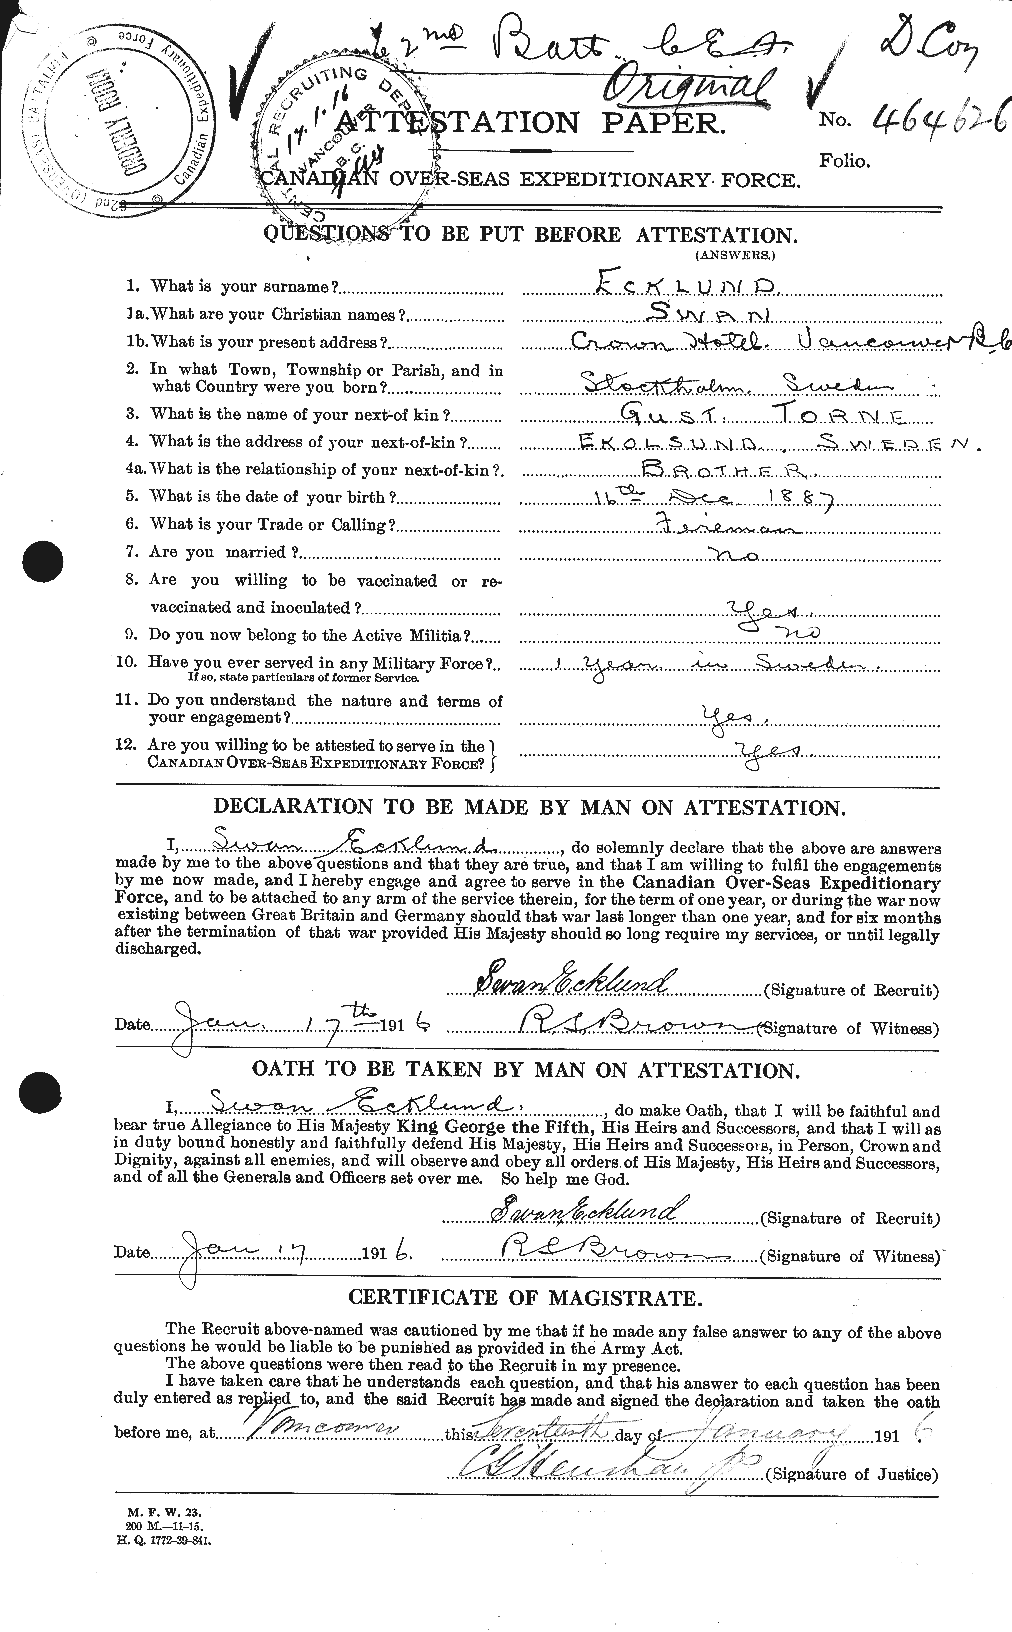 Dossiers du Personnel de la Première Guerre mondiale - CEC 310483a